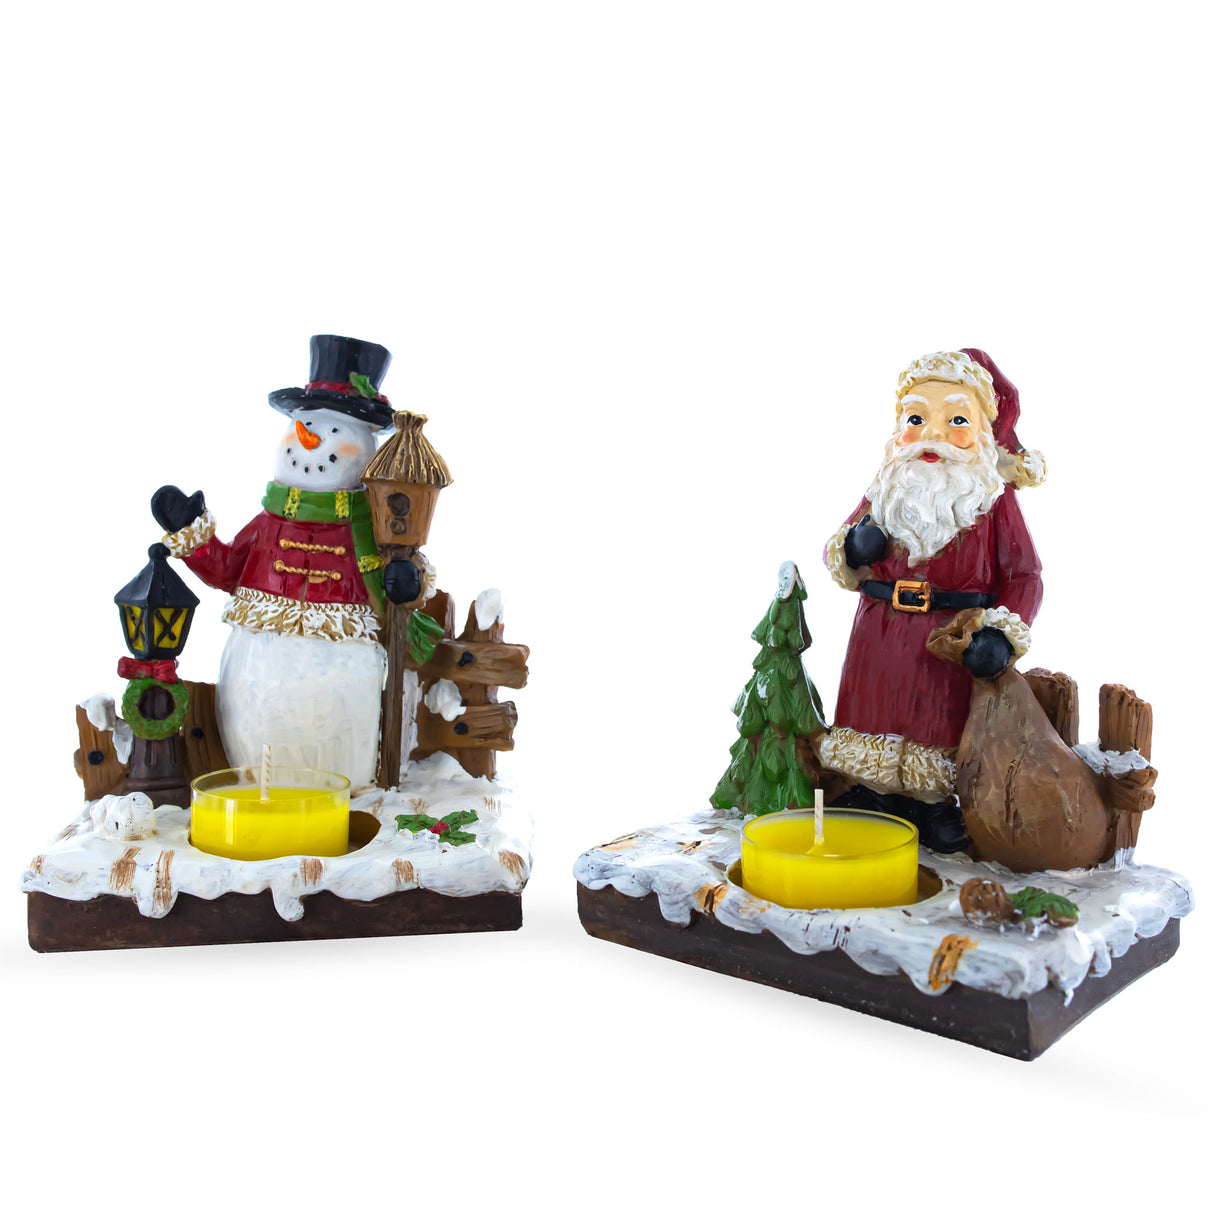 Buy Christmas Decor Figurines Santa AL by BestPysanky Online Gift Ship